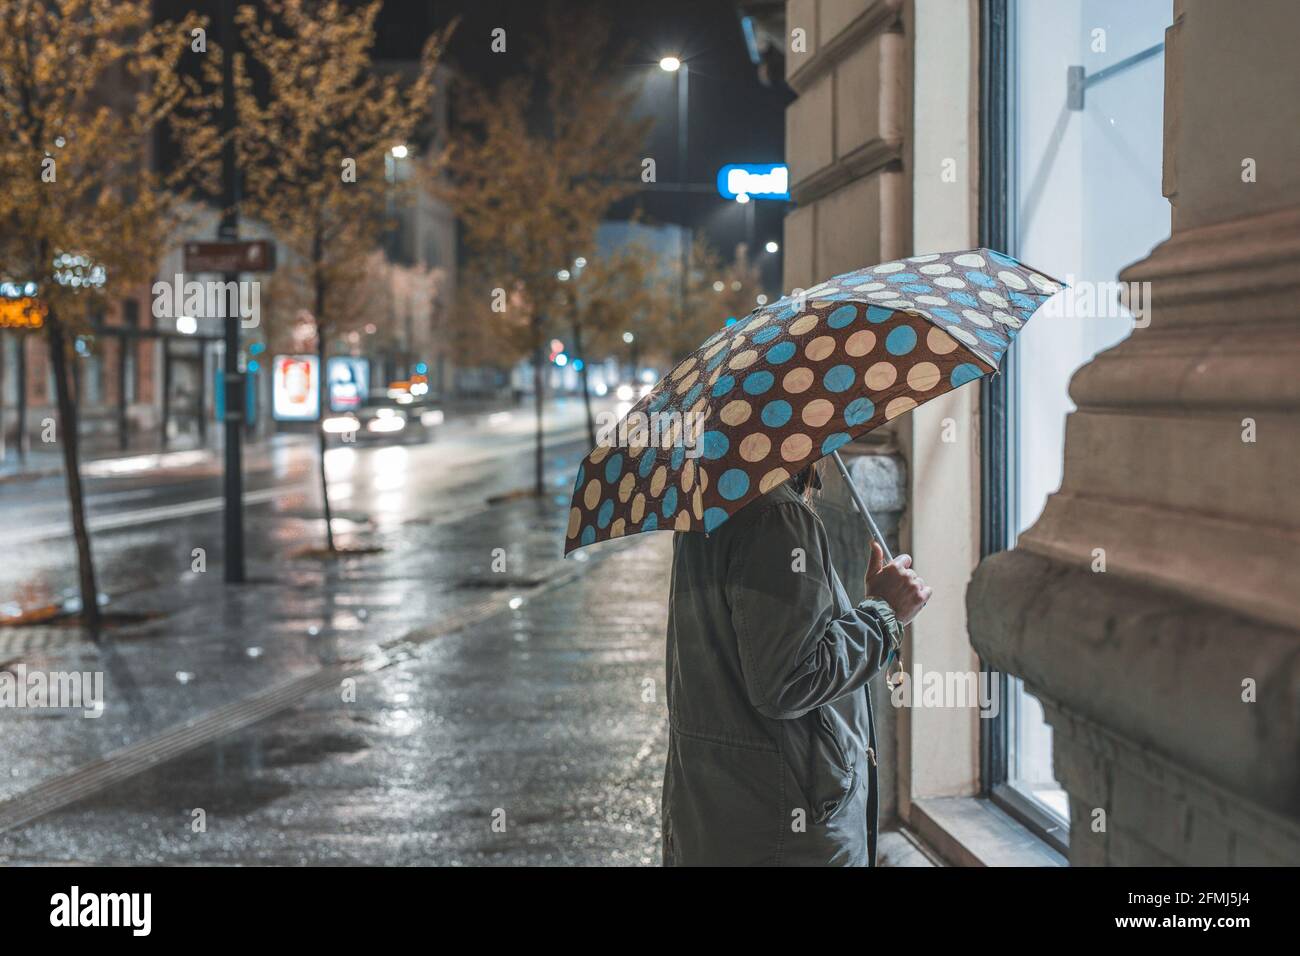 Einsame Frau, die nachts bei Regen alleine Fenstershoppen geht.  Regnerischer Spaziergang durch die Stadt Stockfotografie - Alamy